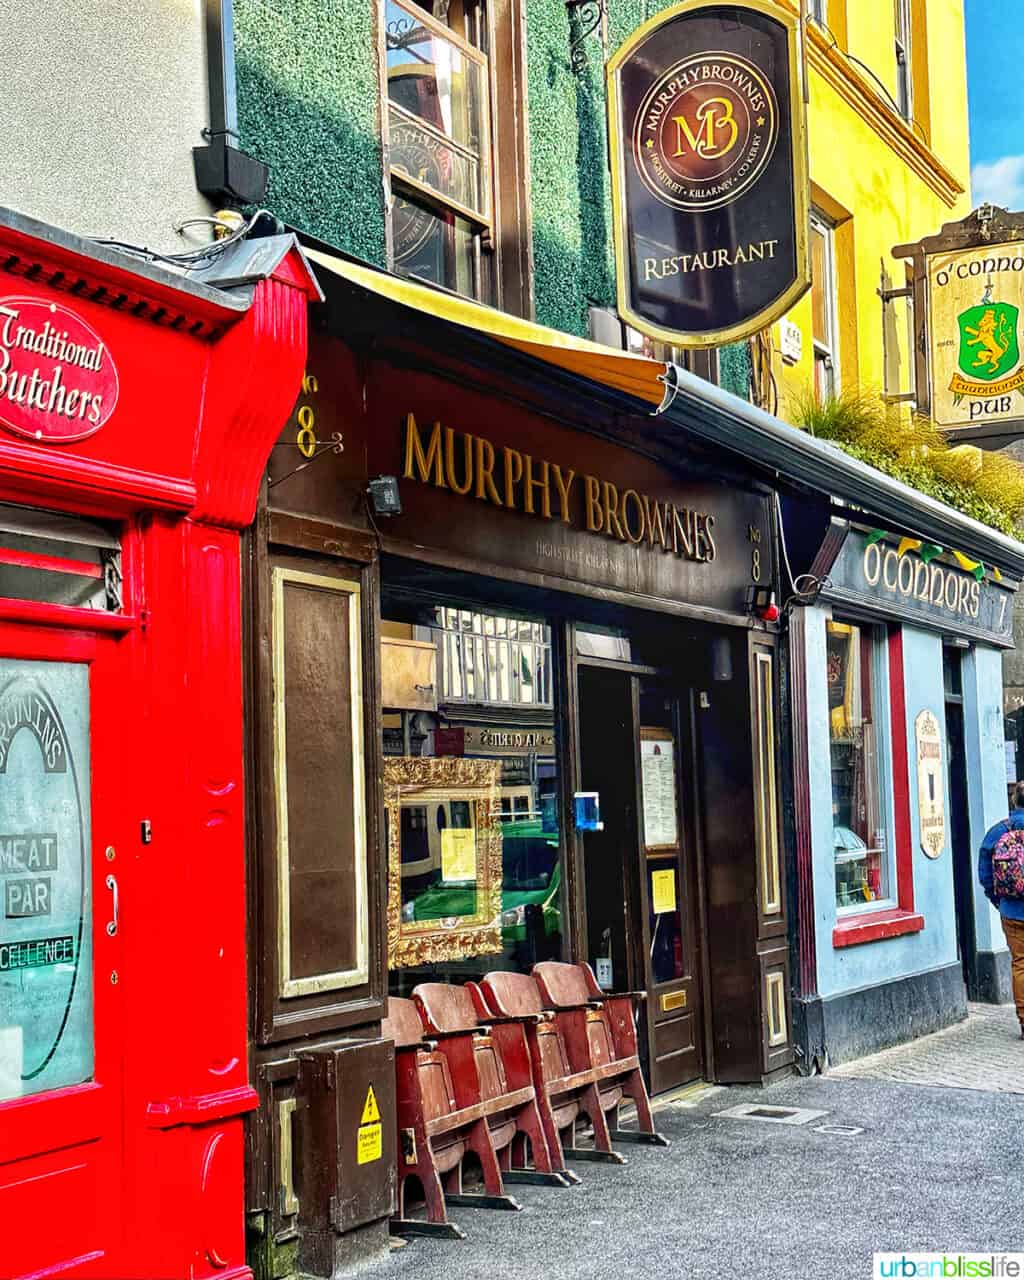 exterior of murphy brownes restaurant in killarney, ireland